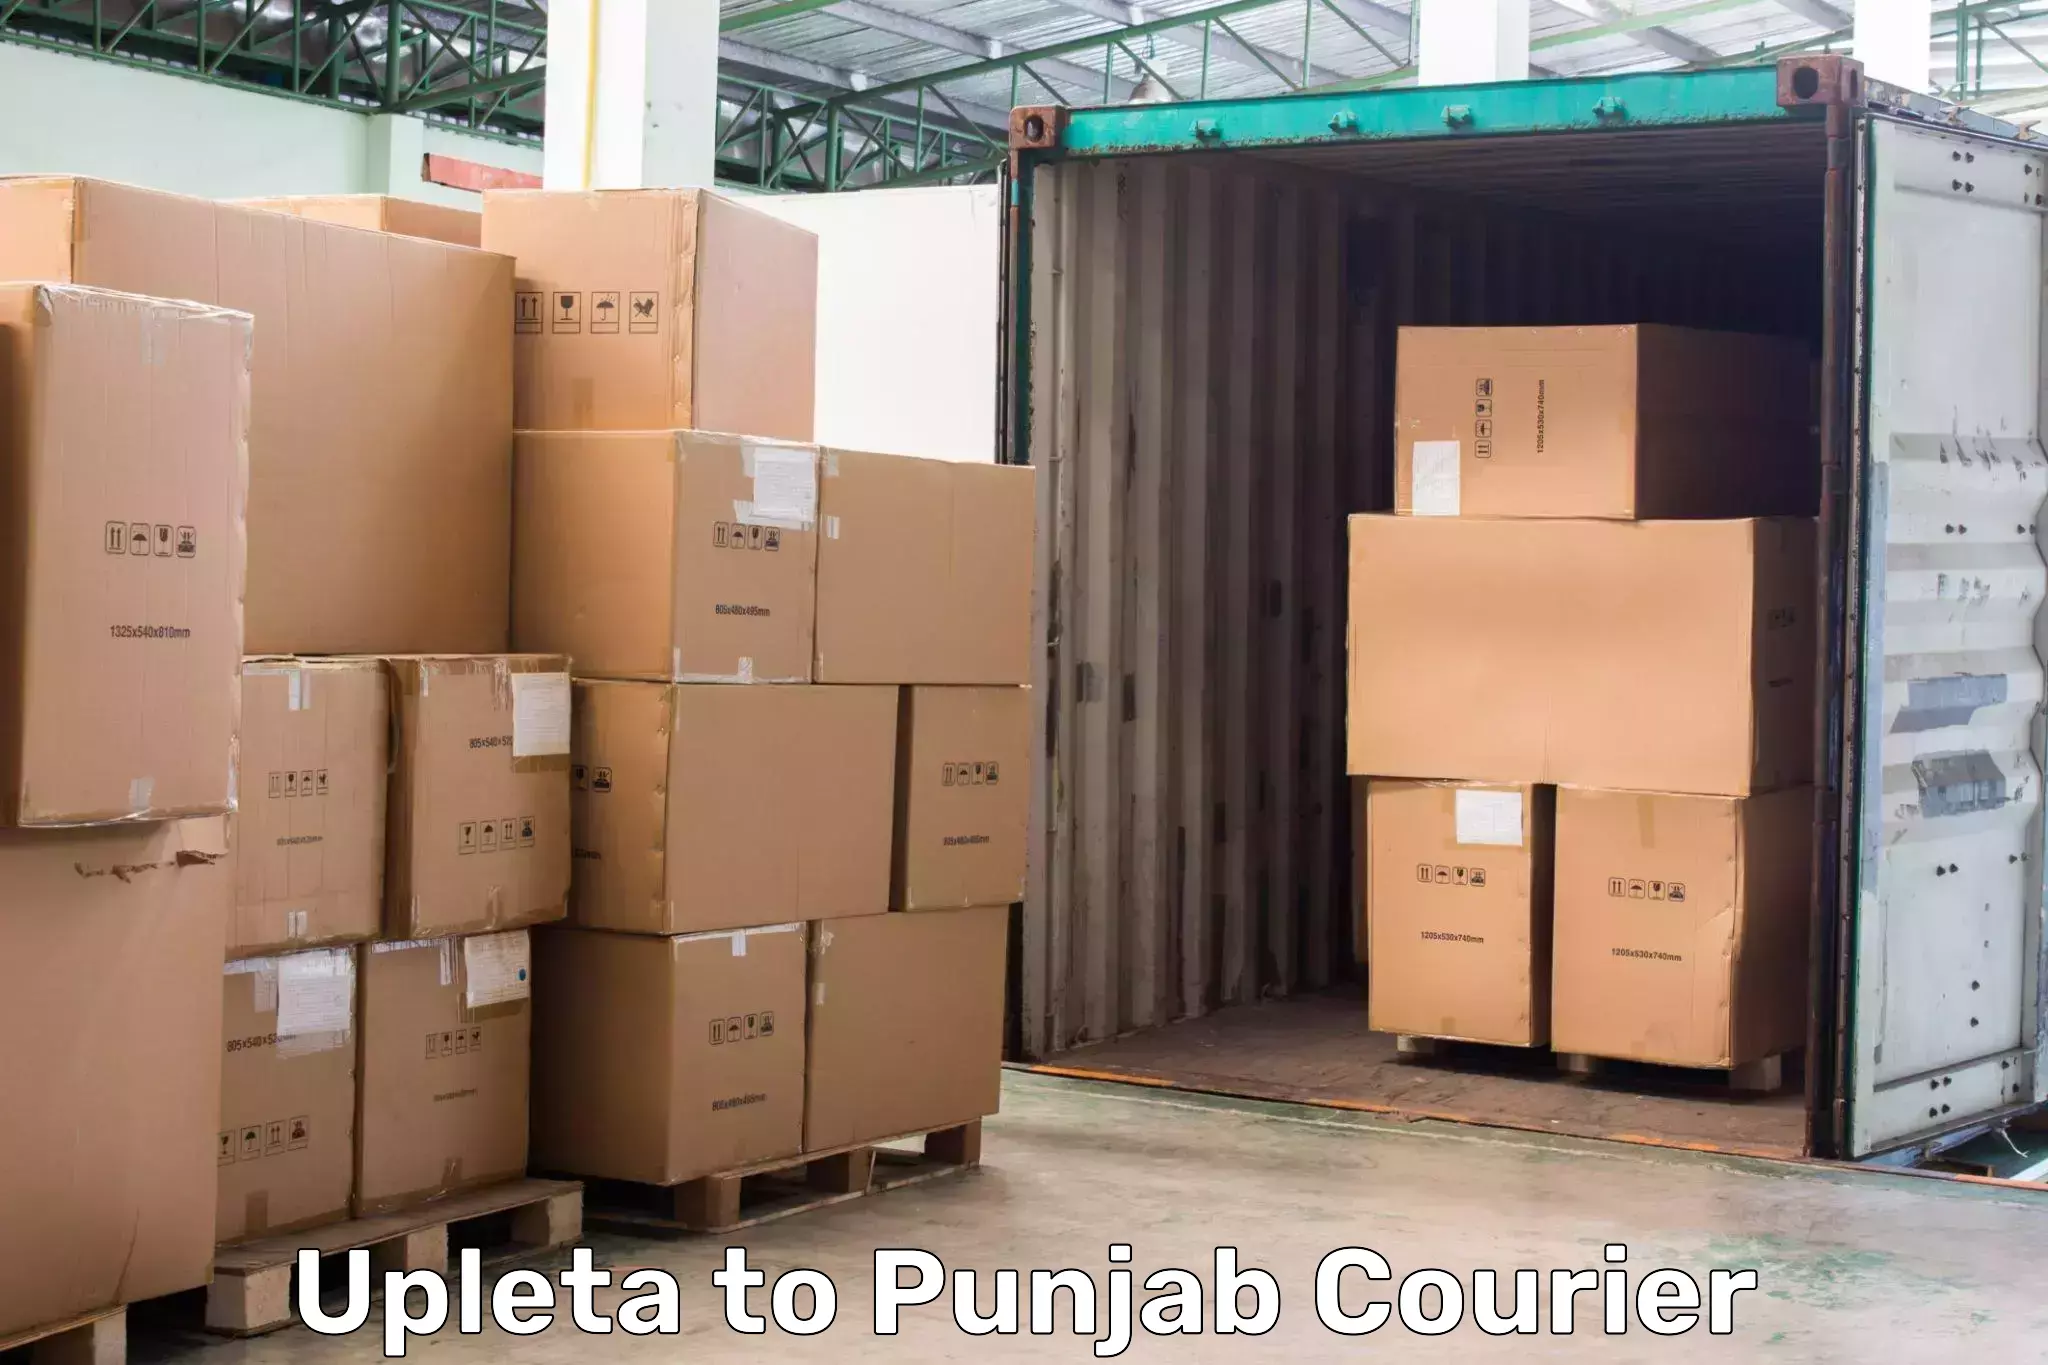 Express package handling Upleta to Punjab